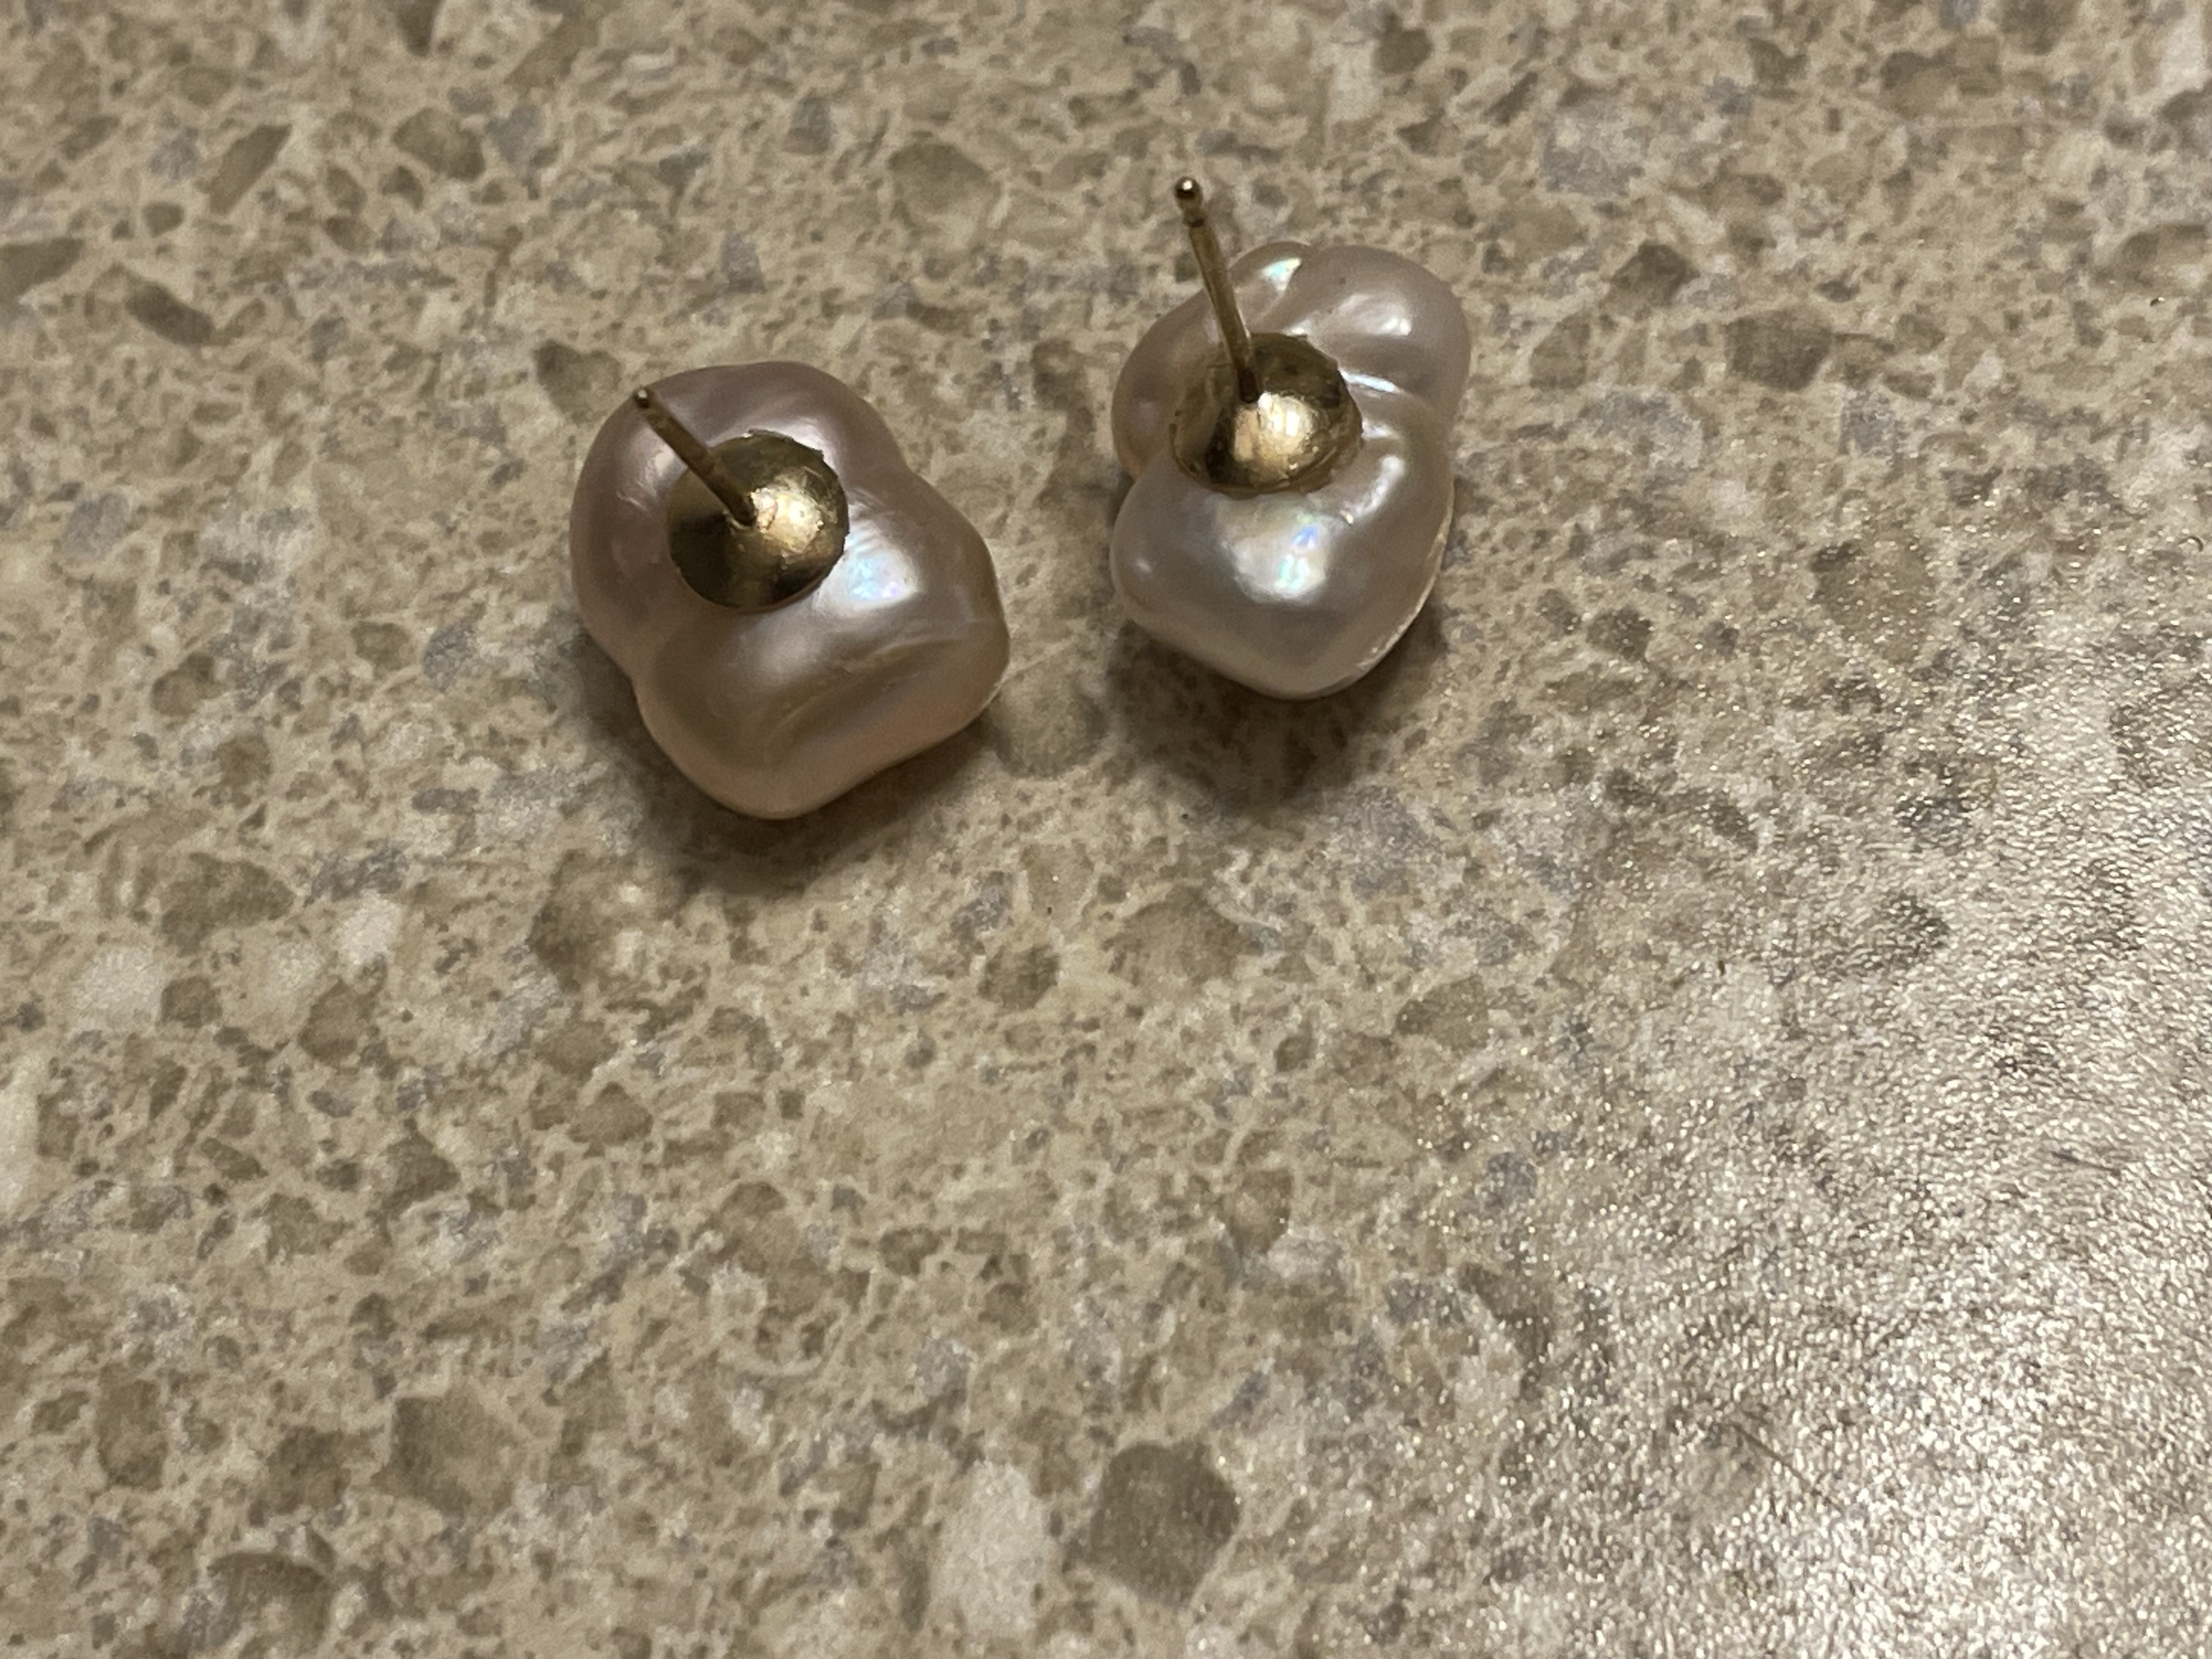 Huge pearls - what kind?